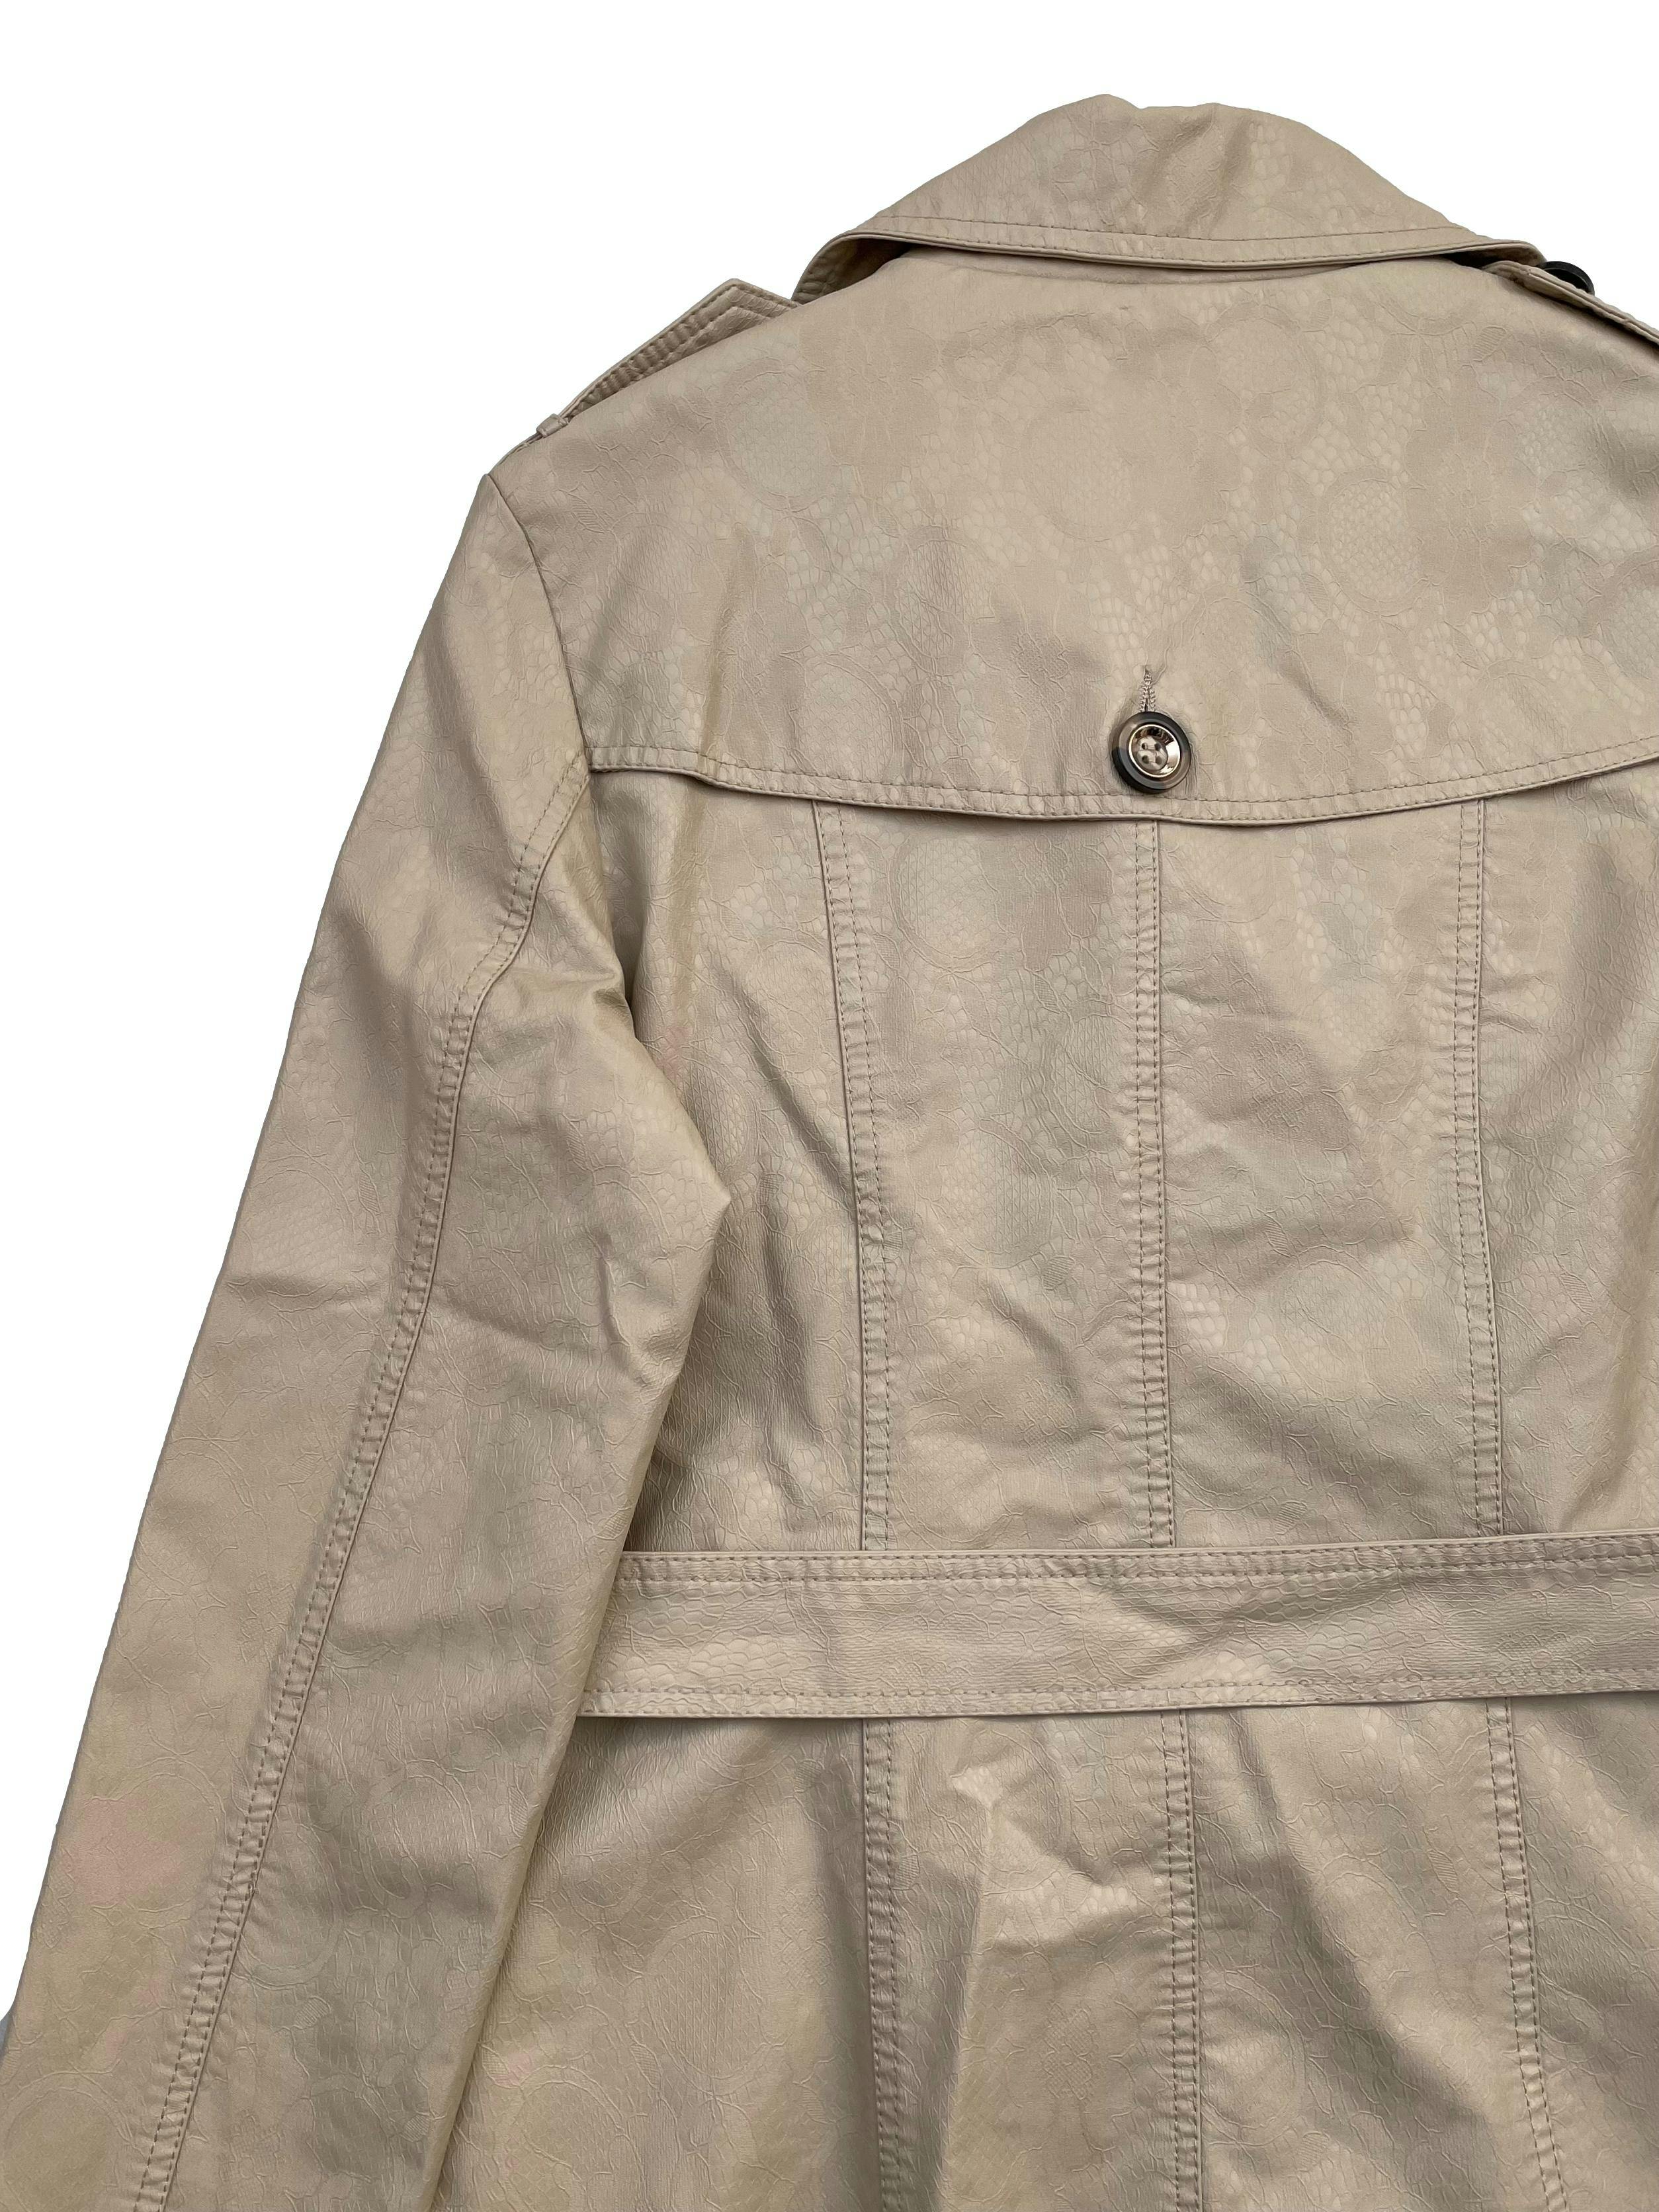 Trench Coat Moda&Cia de cuerina beige texturizada, forrada, dos bolsillos, cinturón y botón de repuesto. Busto 104cm Largo 66cm. Precio original S/450